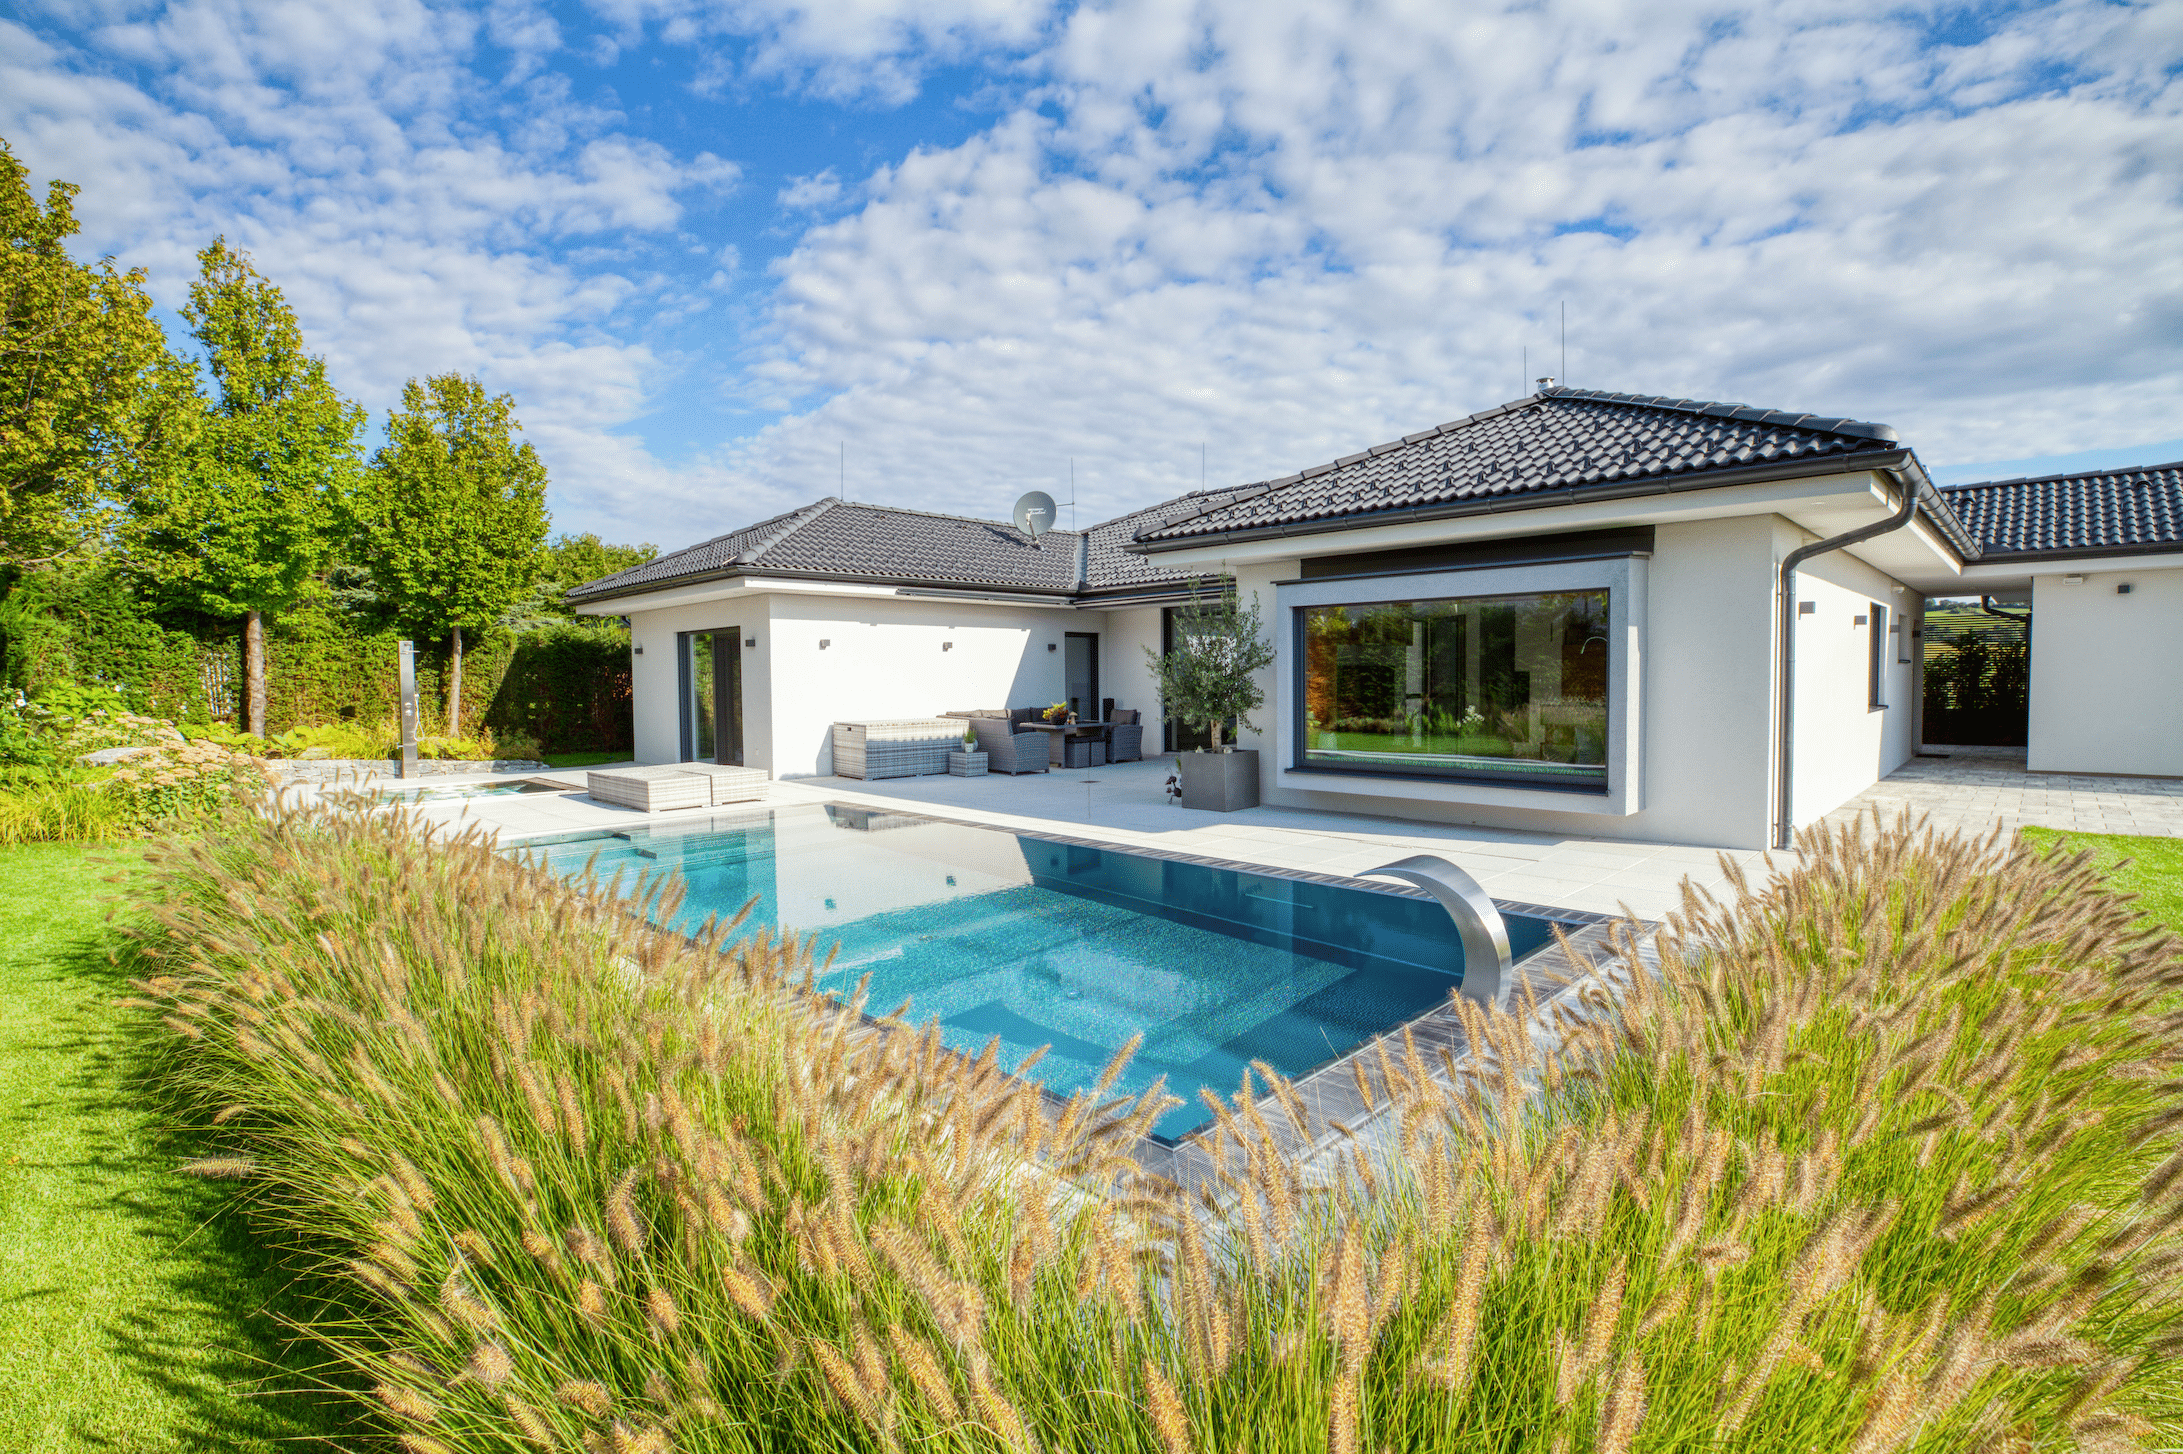 Hartl Haus zeigt einen weißen Bungalow mit schwarzem Walmdach und einem rechteckigen Pool auf der Terrasse.